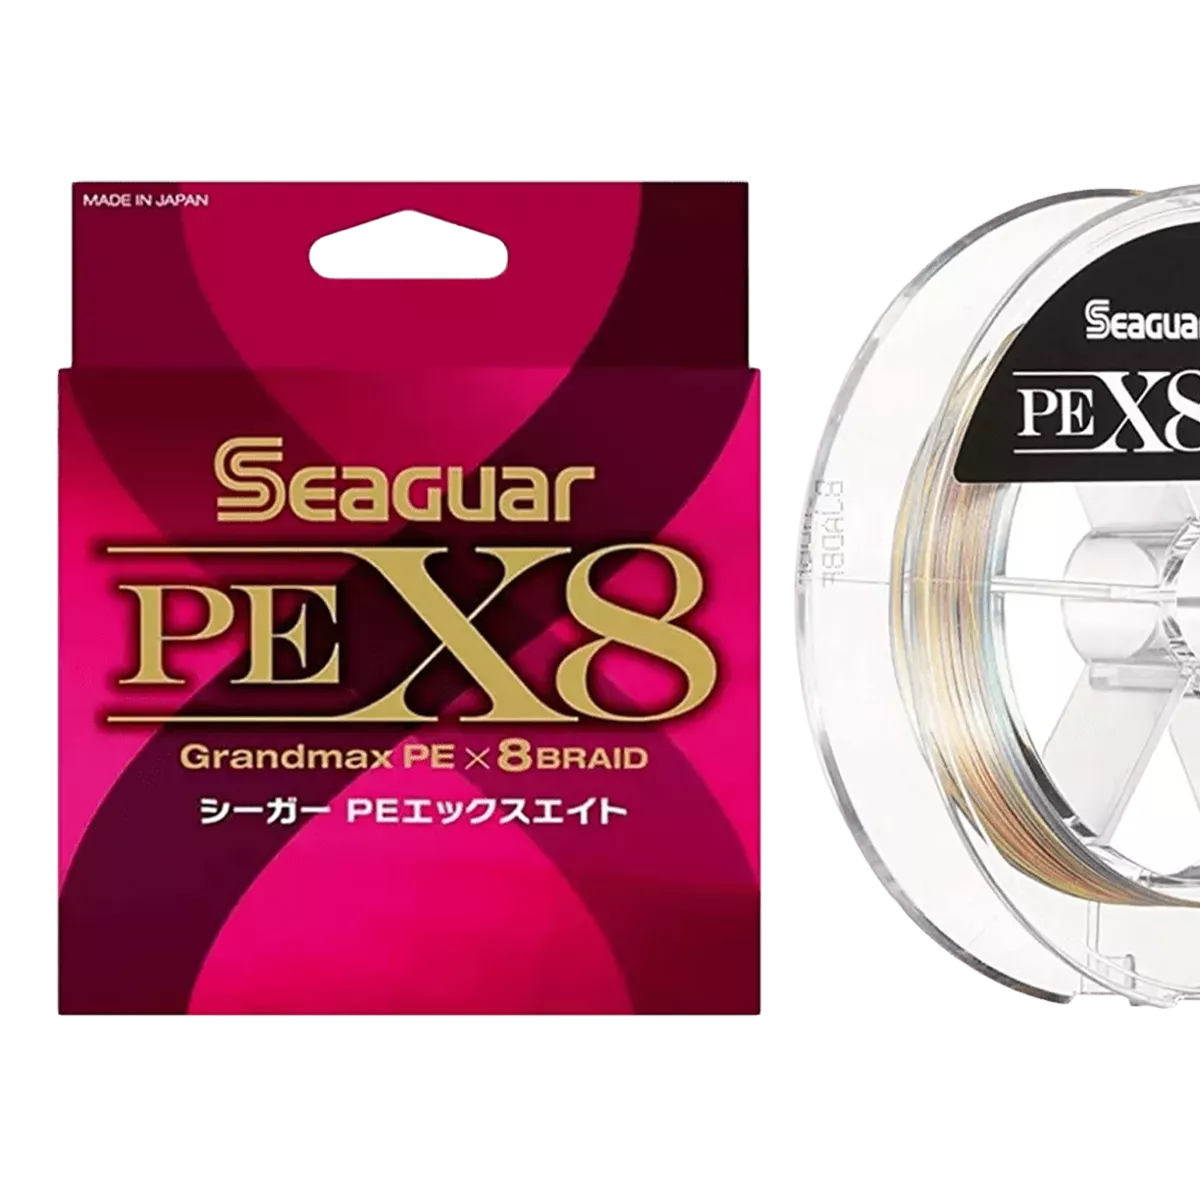 Seaguar Grandmax PE X8